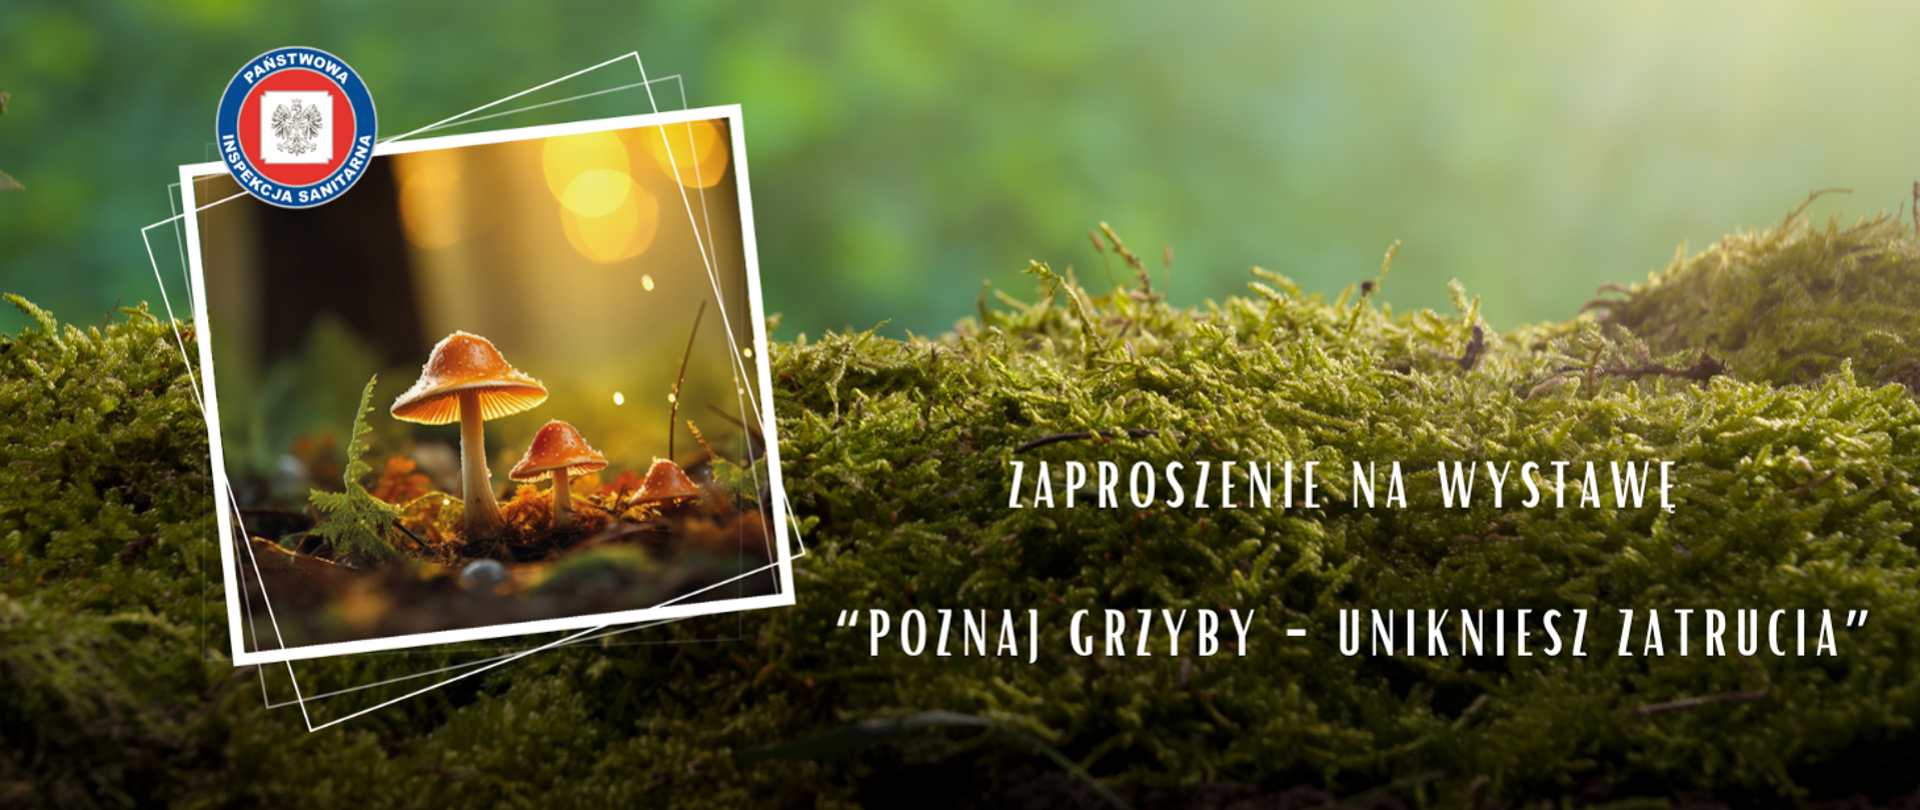 Zdjęcia runa leśnego z grzybami. Na jego tle napis: Zaproszenie na wystawę Poznaj grzyby Unikniesz zatrucia. 